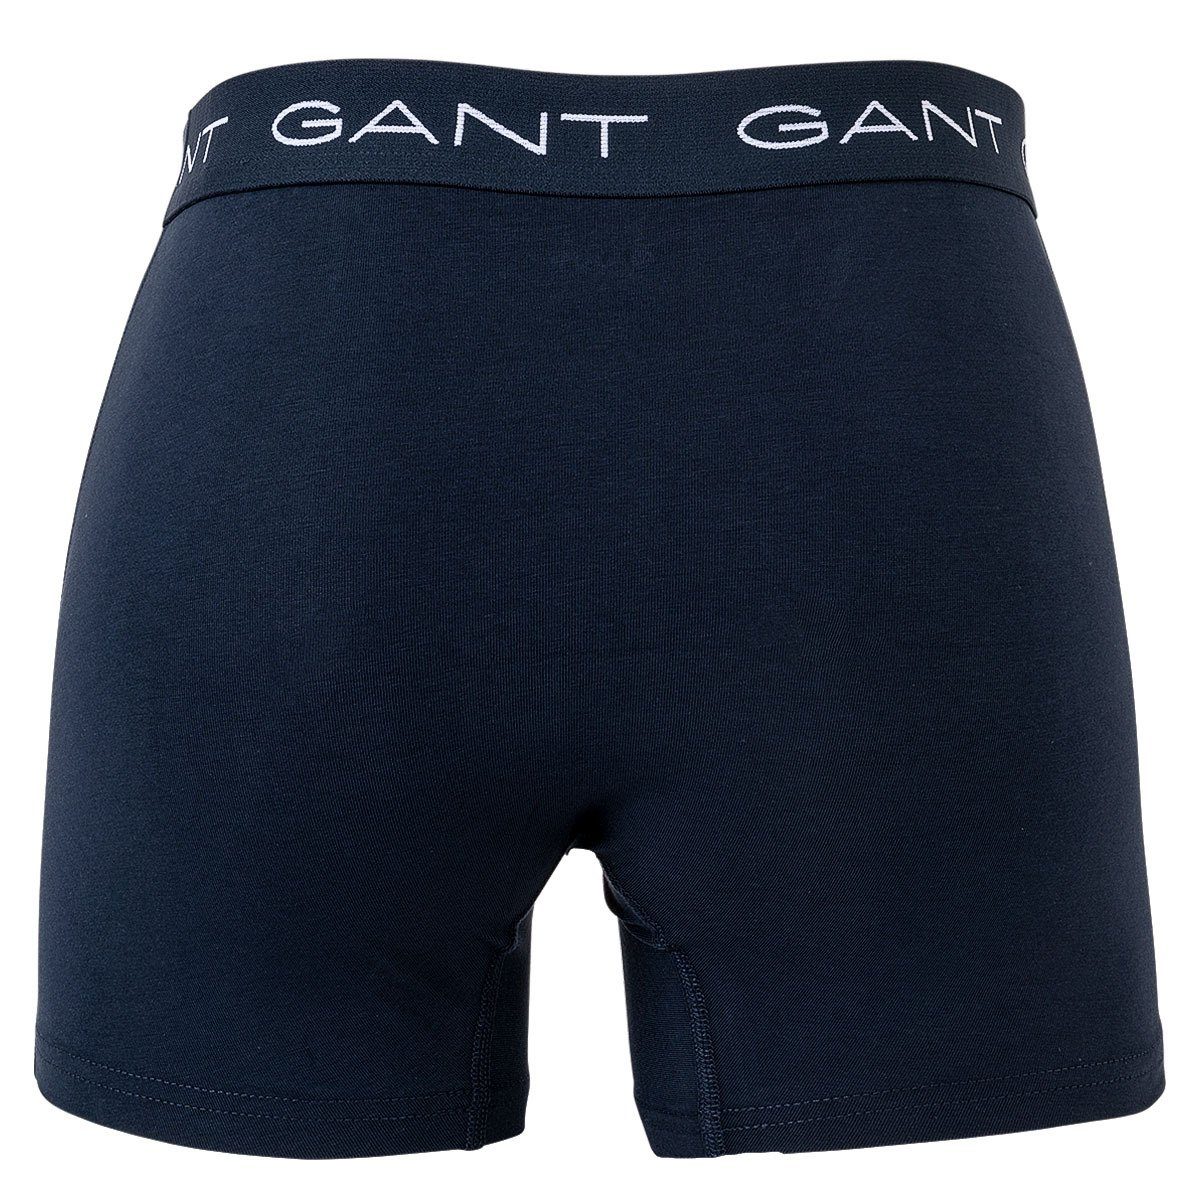 Briefs Gant Shorts, Pack Herren Boxer 3er - Boxer Boxer Marine